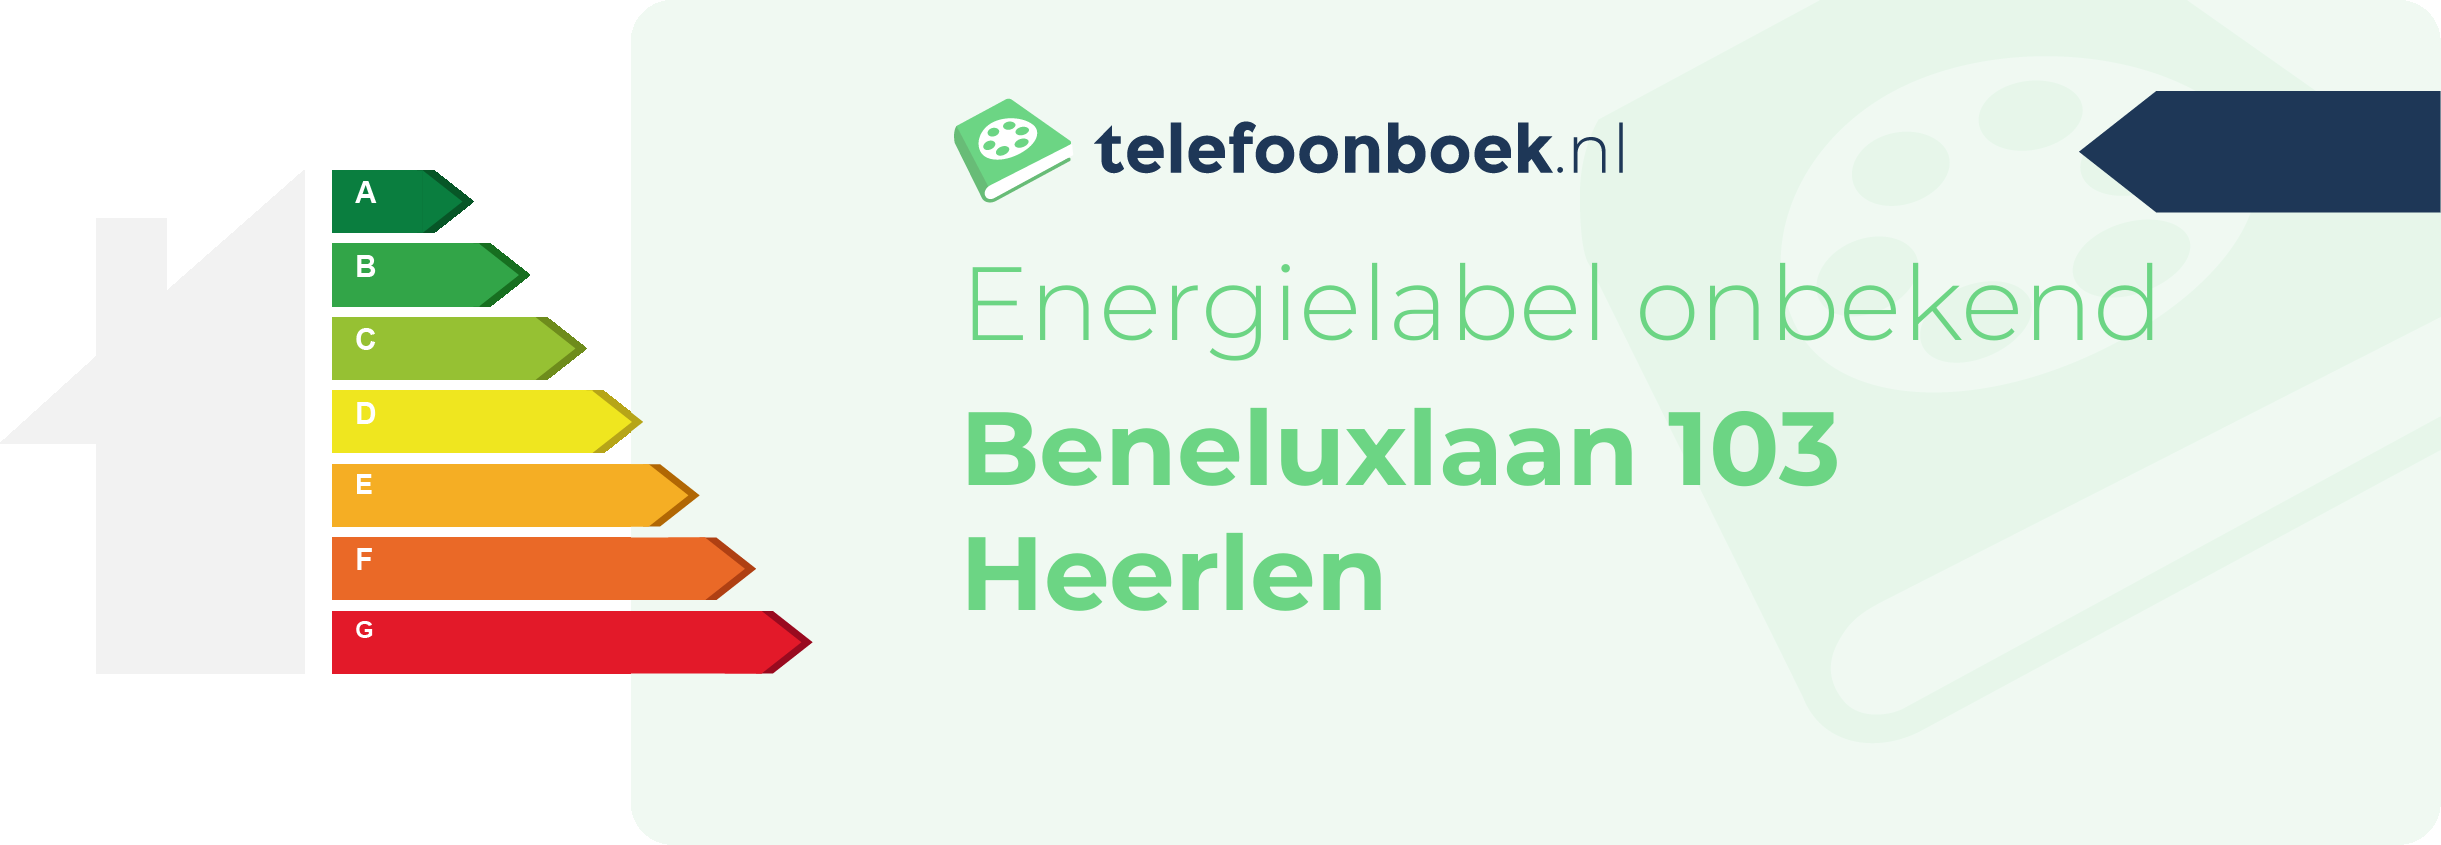 Energielabel Beneluxlaan 103 Heerlen